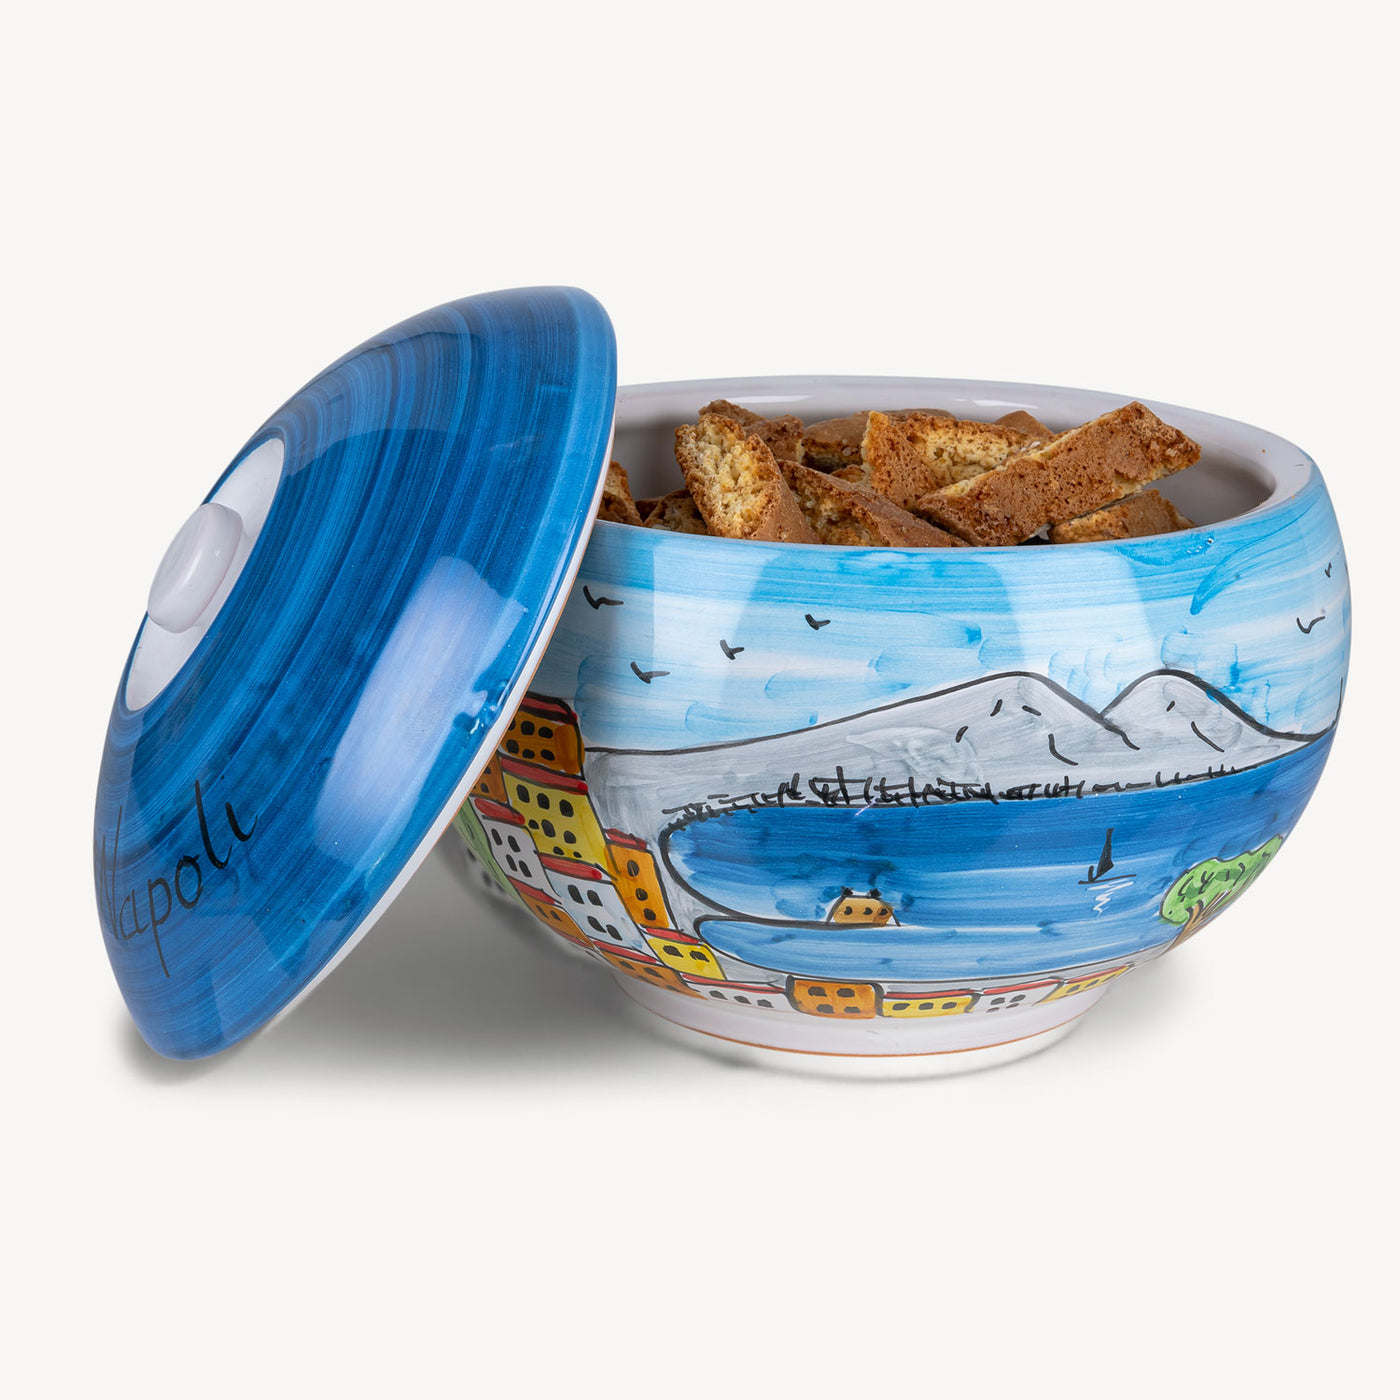 Napoli - Handmade Cookie Jar